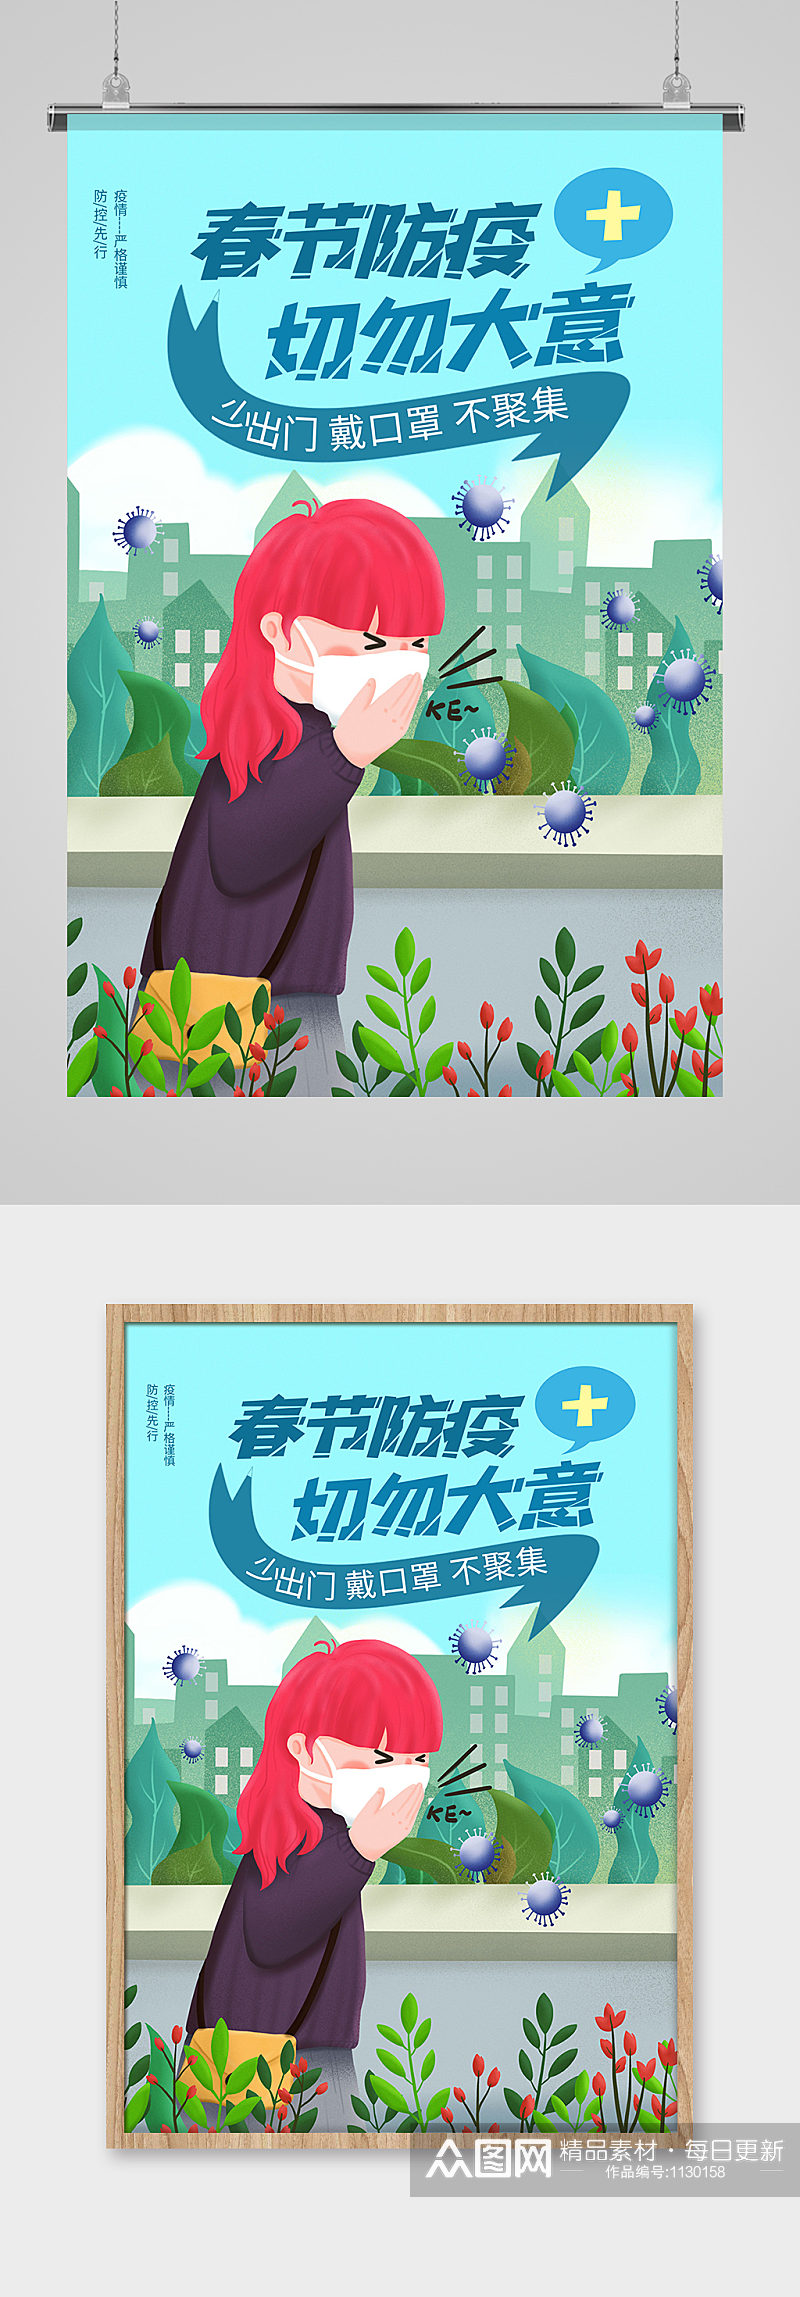 春节防疫公益宣传海报素材